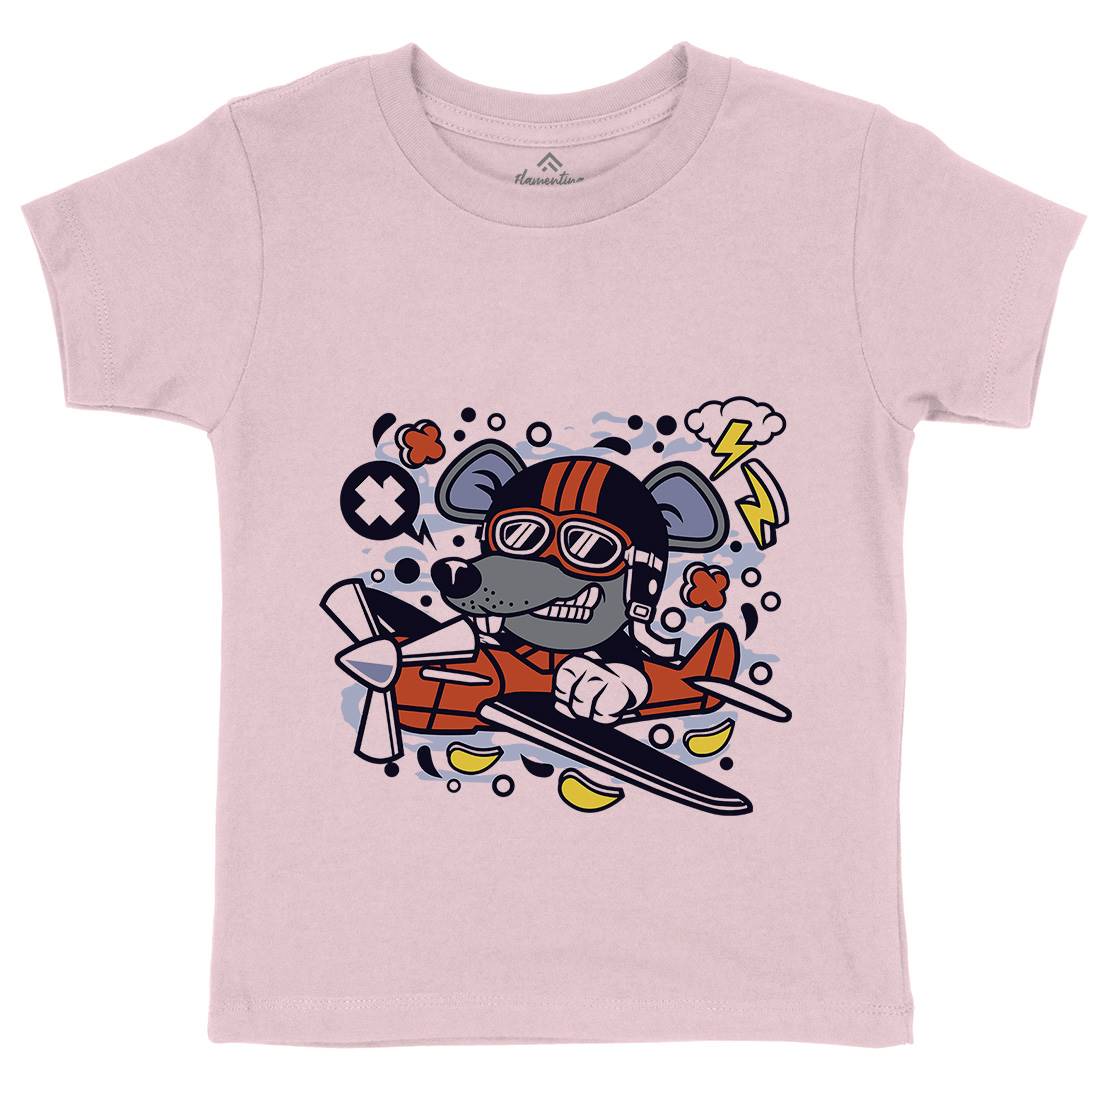 Rat Pilot Kids Crew Neck T-Shirt Army C625